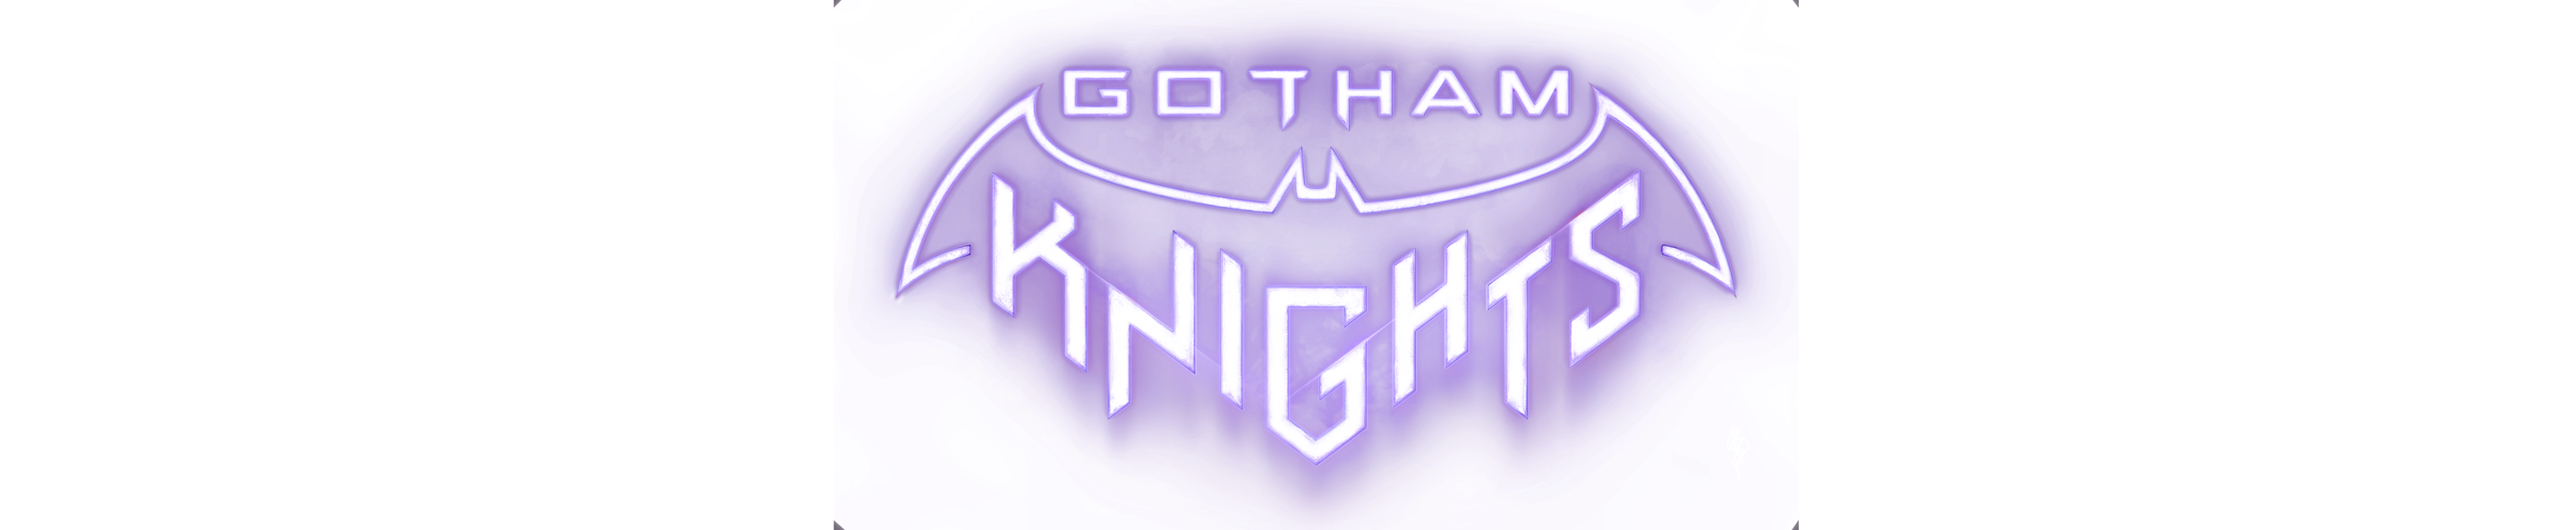 Gotham Knights -logo